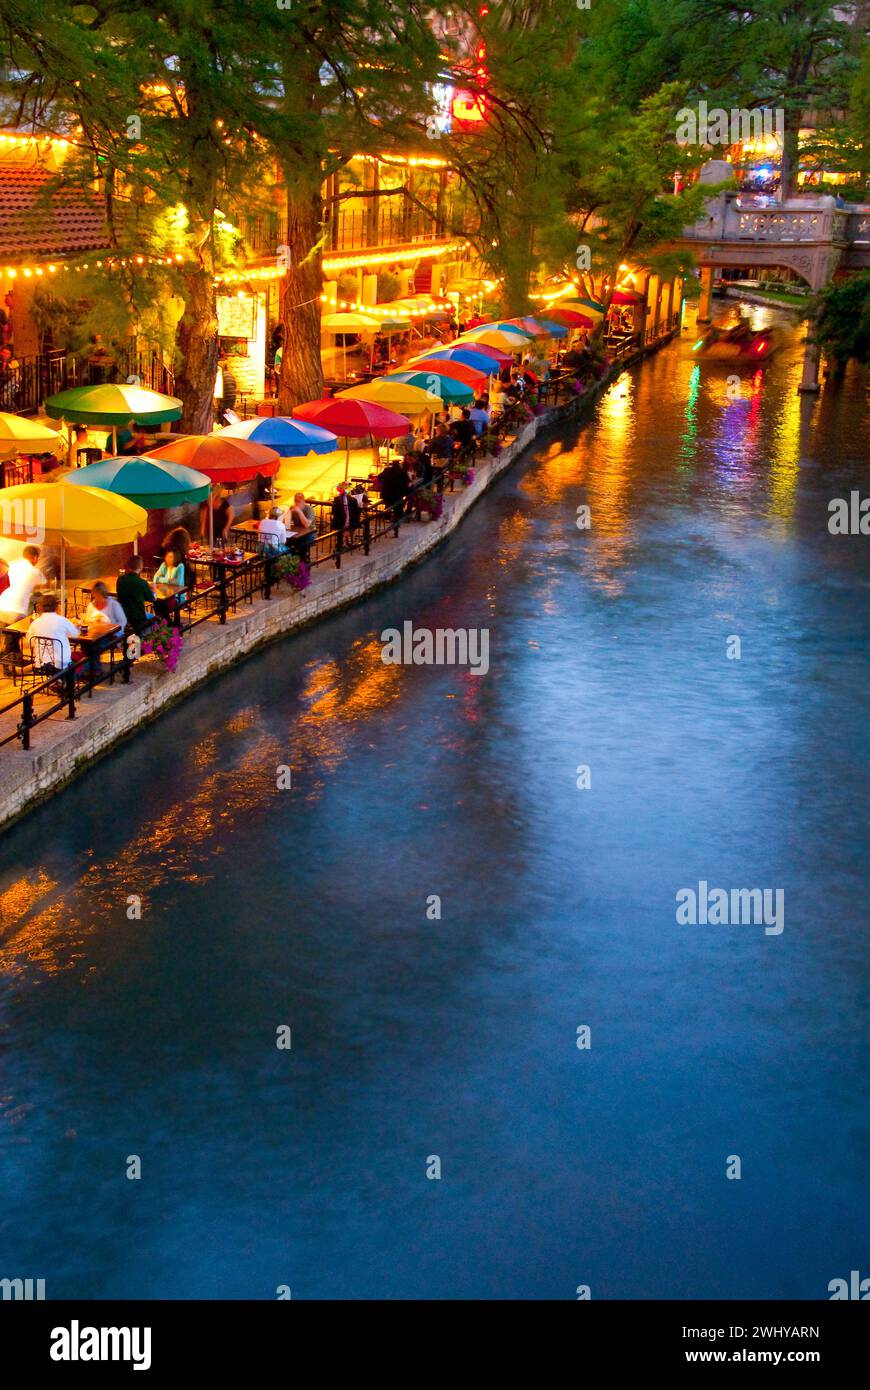 Restaurants säumen den River Walk am Paseo de Rio in der Innenstadt von San Antonio, Texas - USA Stockfoto